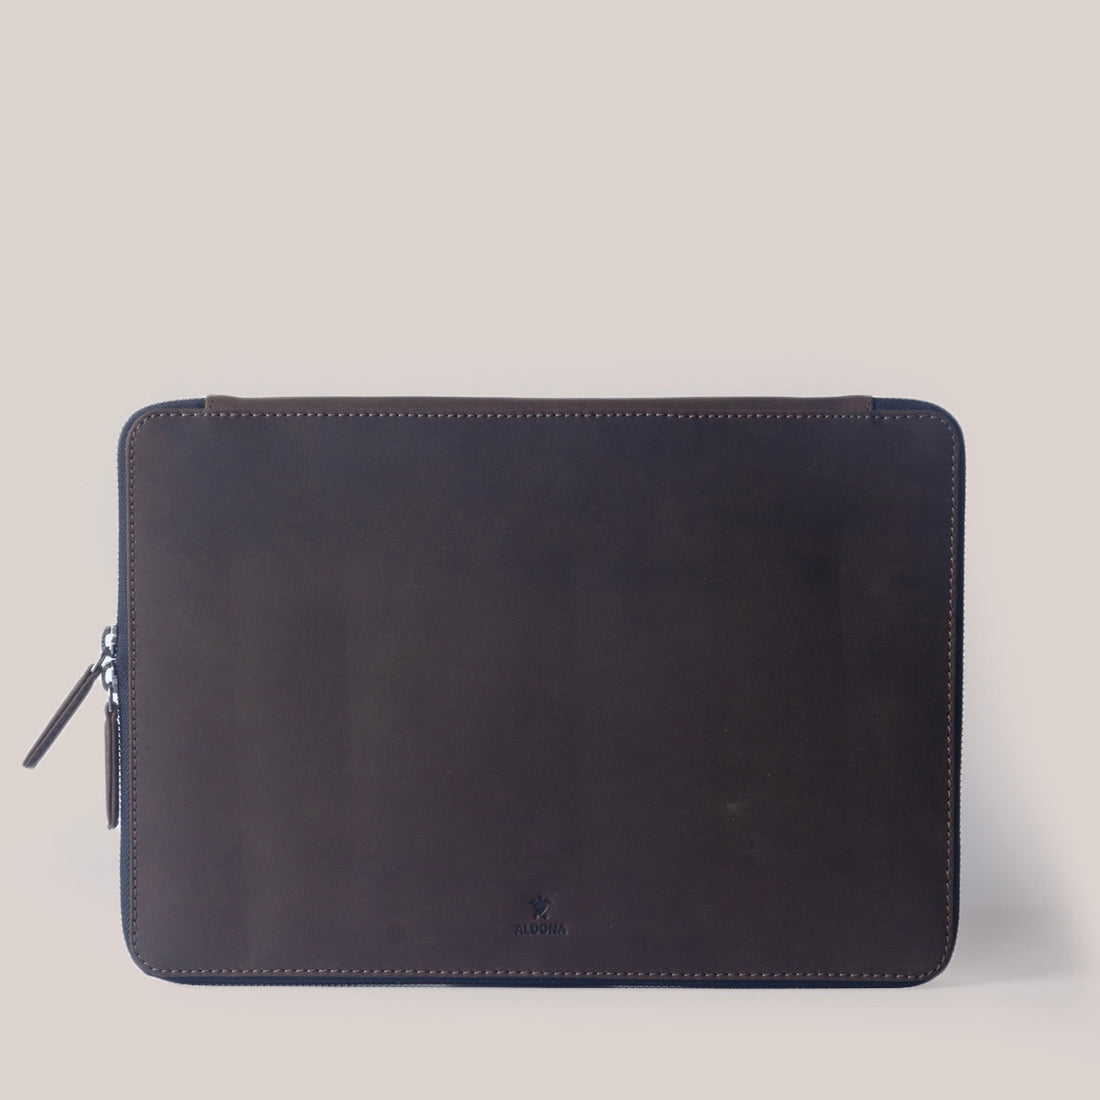 MacBook Pro 16 Zippered Laptop Case - Felt and Tan Crunch